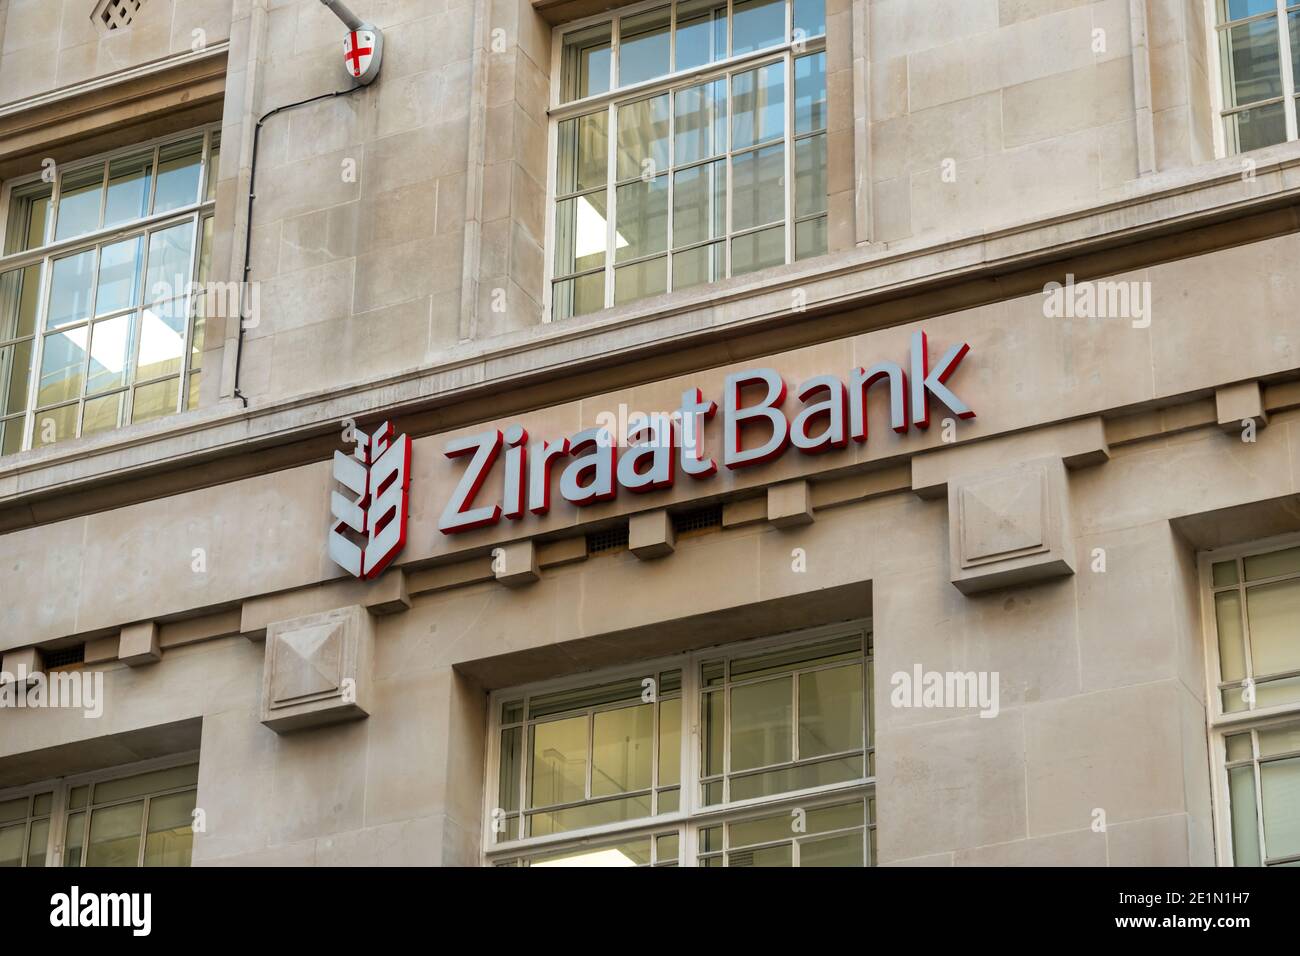 Londres- Banco Ziraat, Ciudad de Londres, sucursal de un gran banco turco Foto de stock